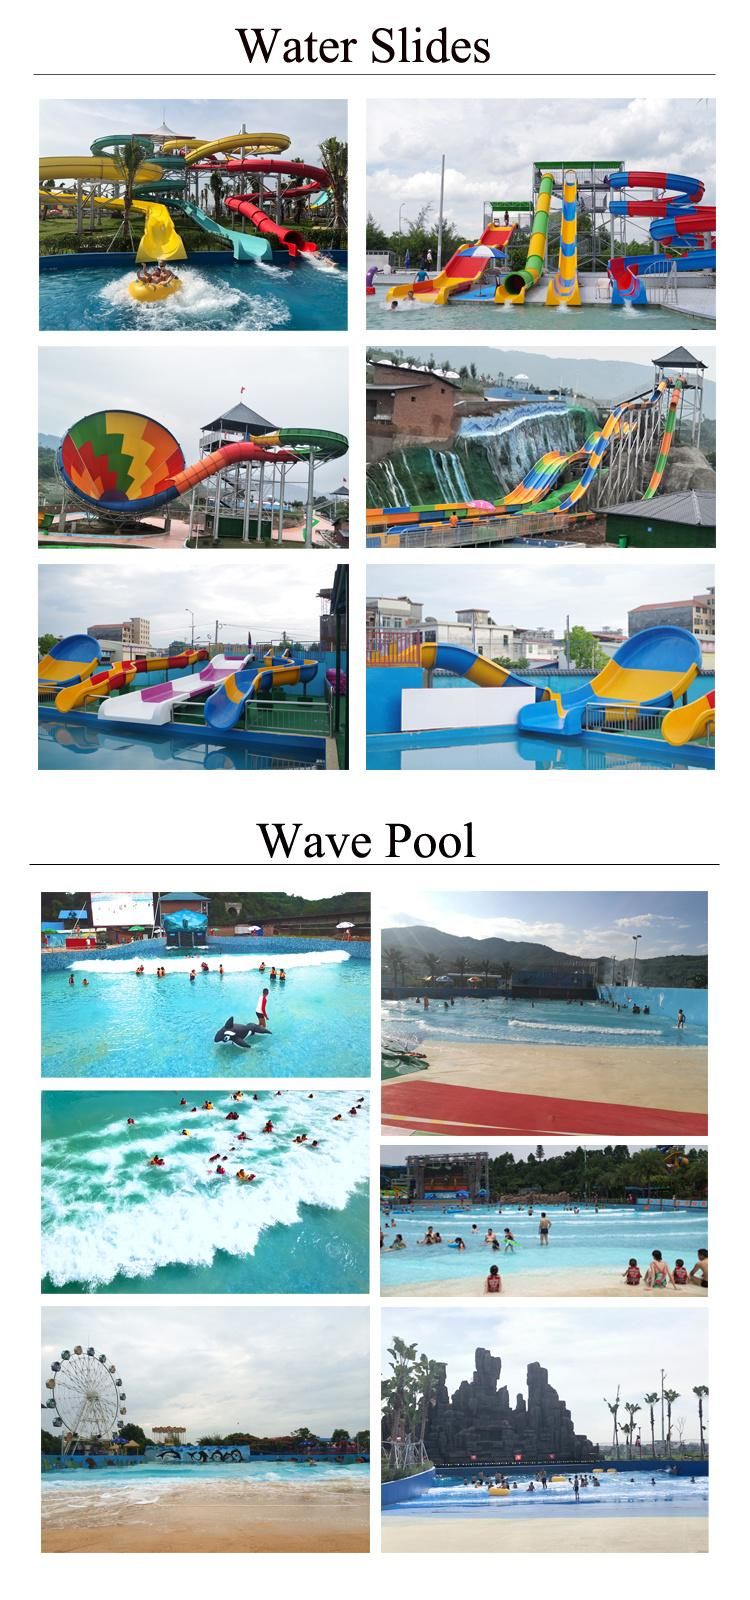 Aqua Park Resort Kids Water Slide for Family Swimming Pool